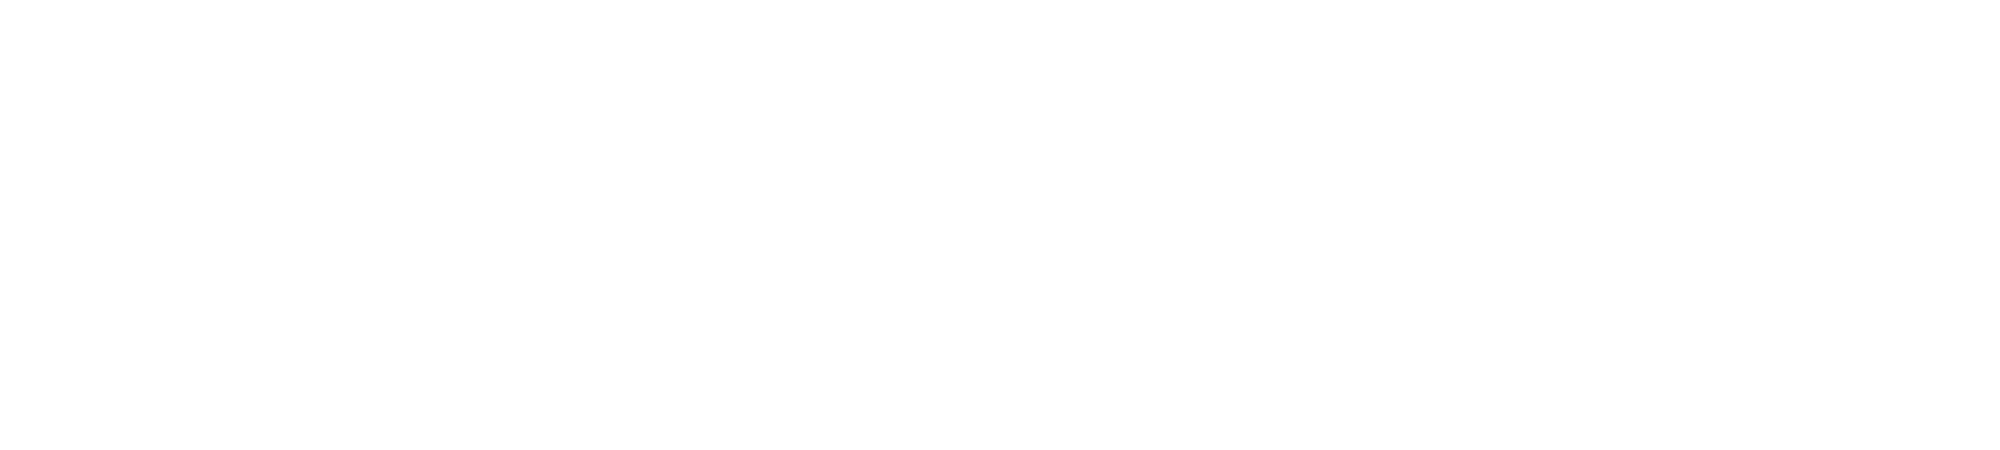 Fiege-logo-w